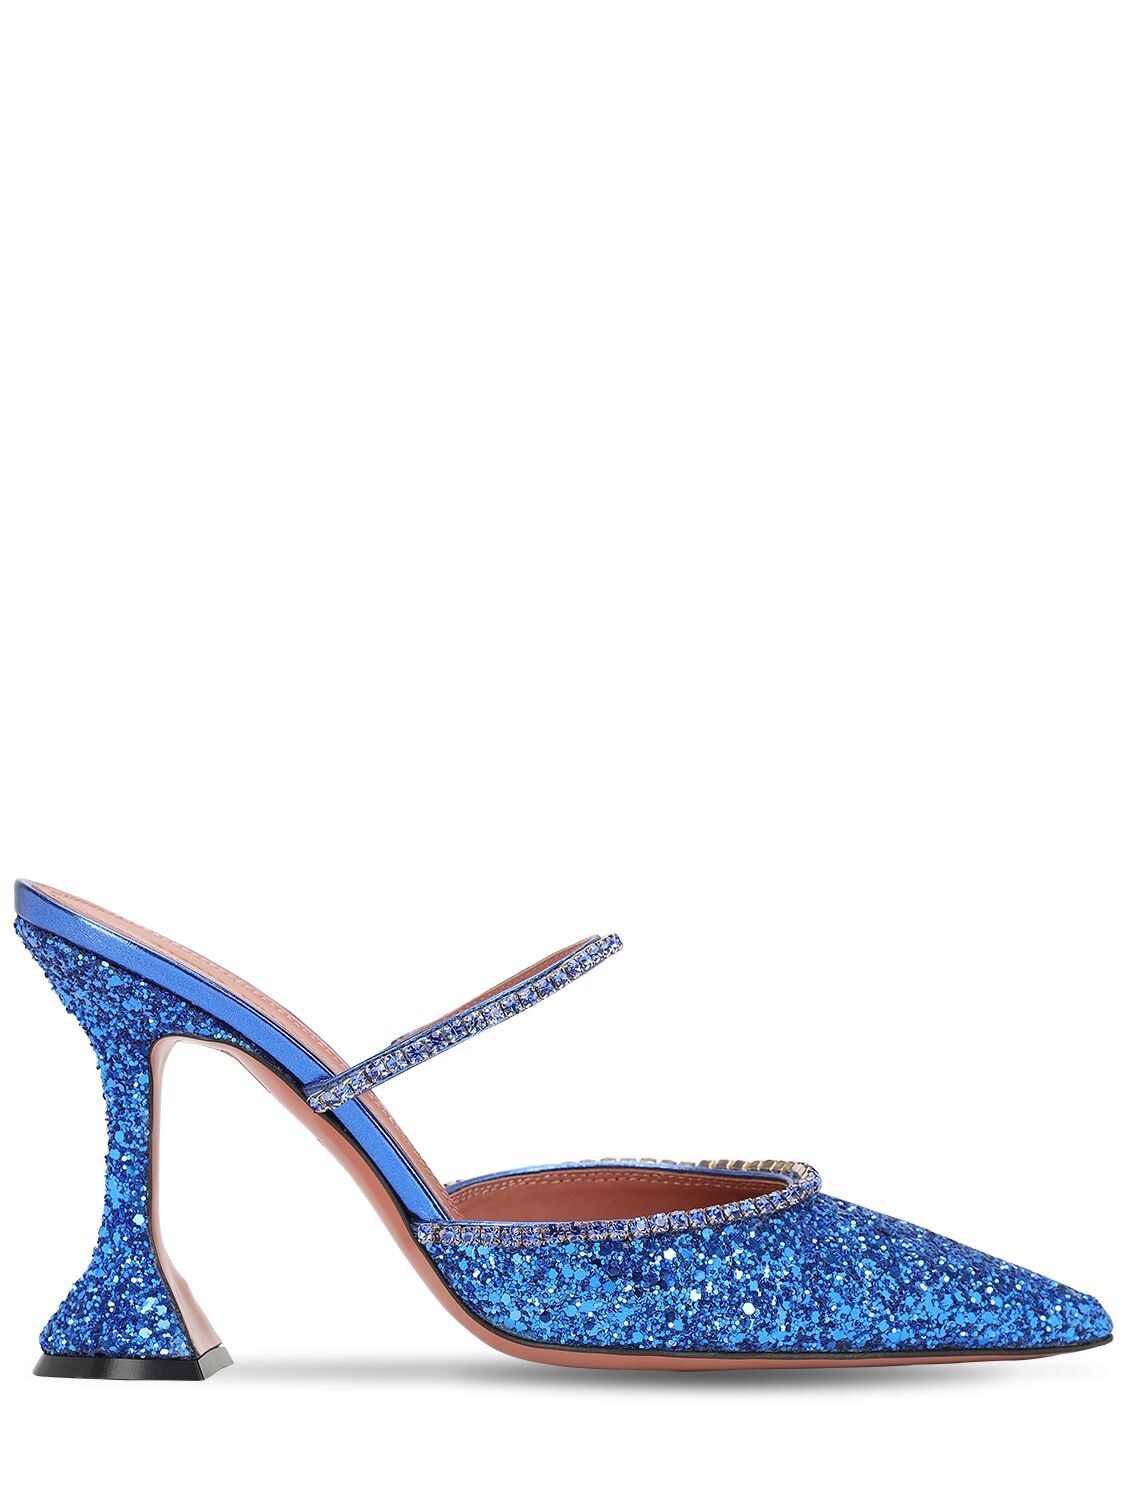 Amina Muaddi 100mm Gilda Embellished Glitter Mules In Blue